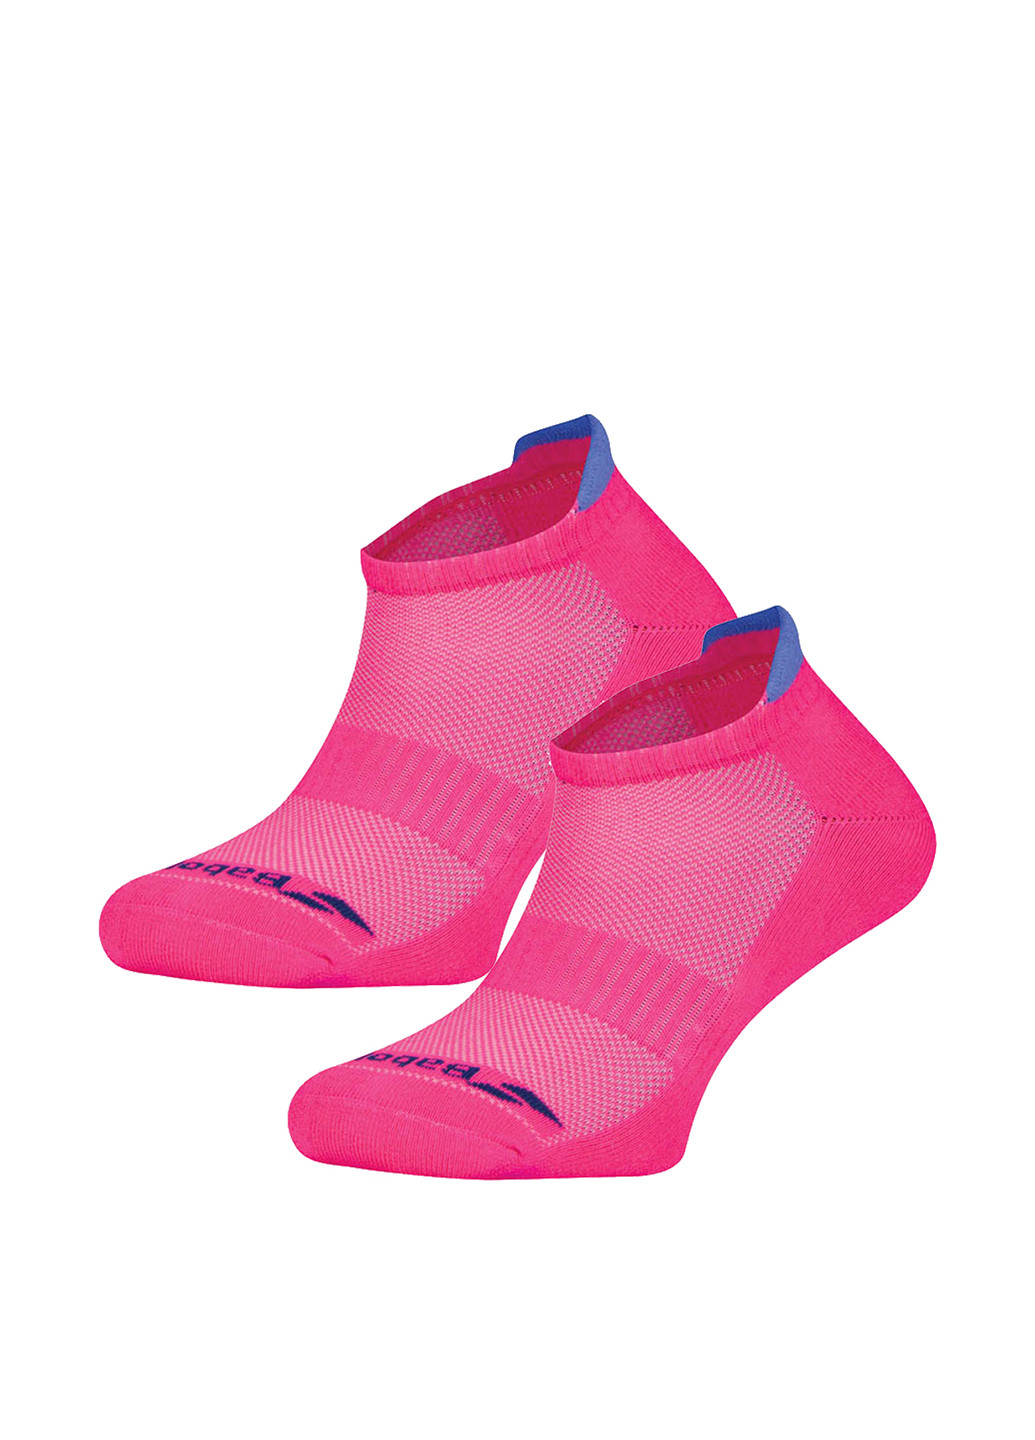 Носки (2 пары) Babolat логотипы розовые спортивные